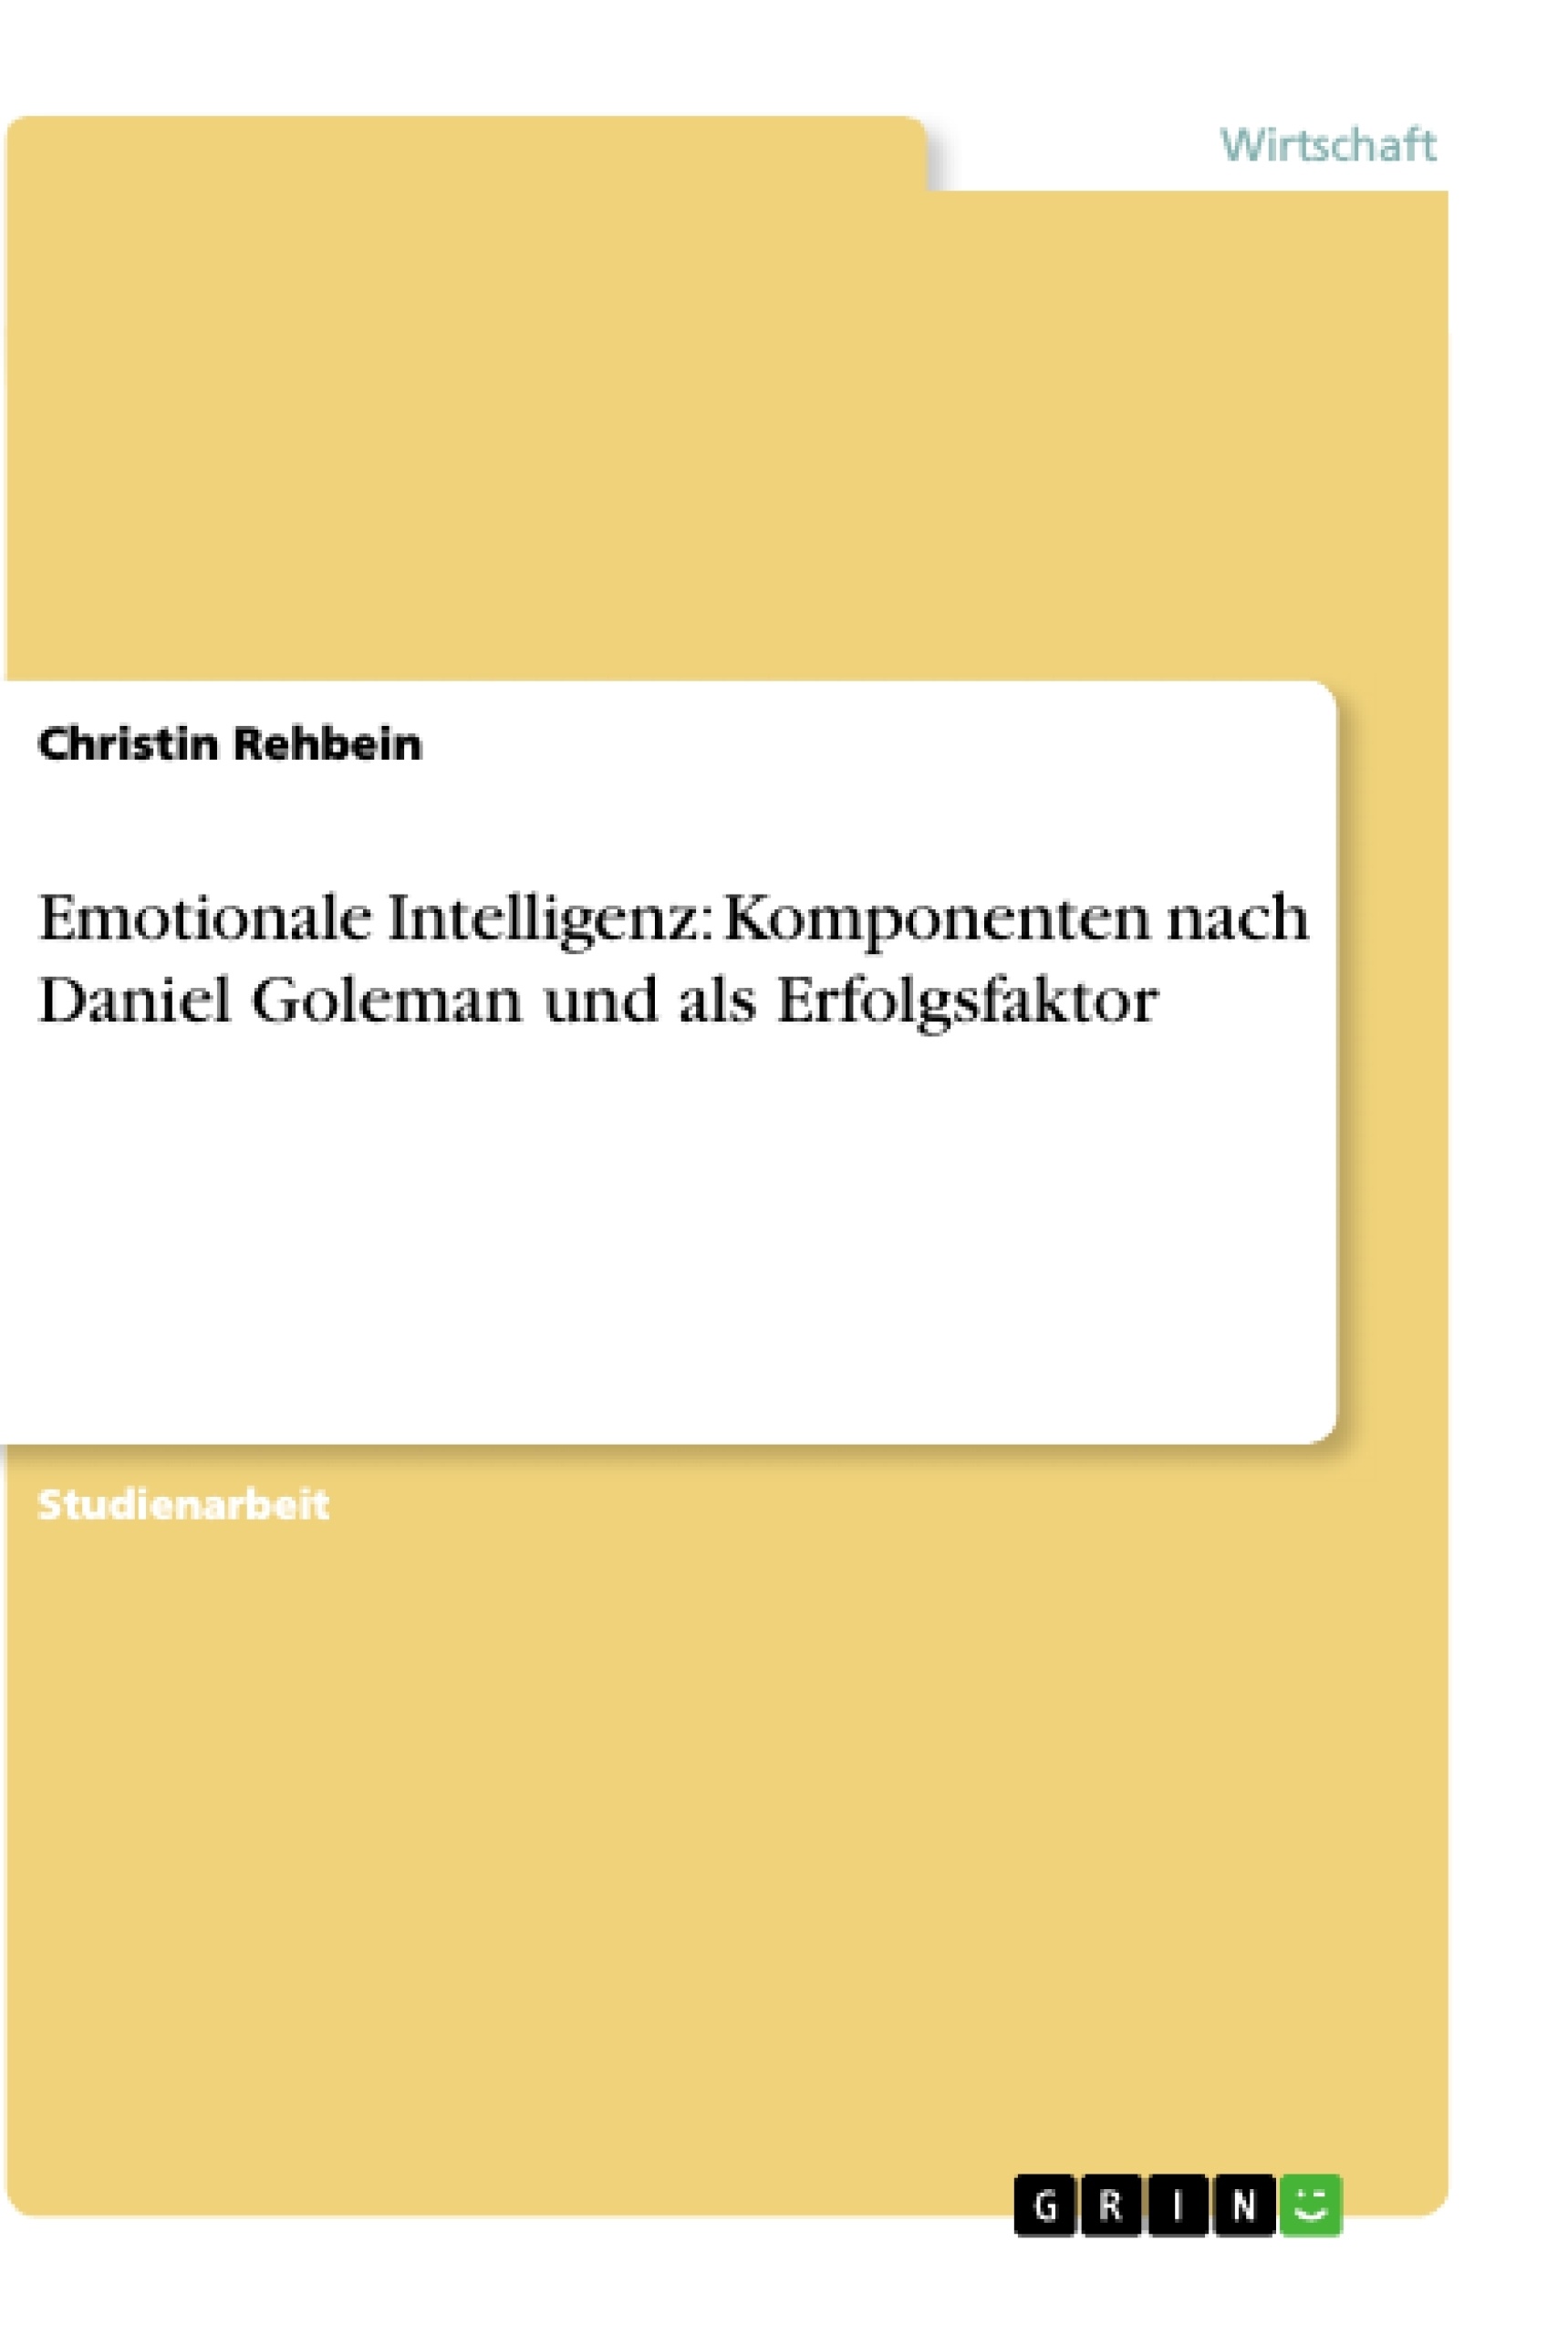 Título: Emotionale Intelligenz: Komponenten nach Daniel Goleman und als Erfolgsfaktor